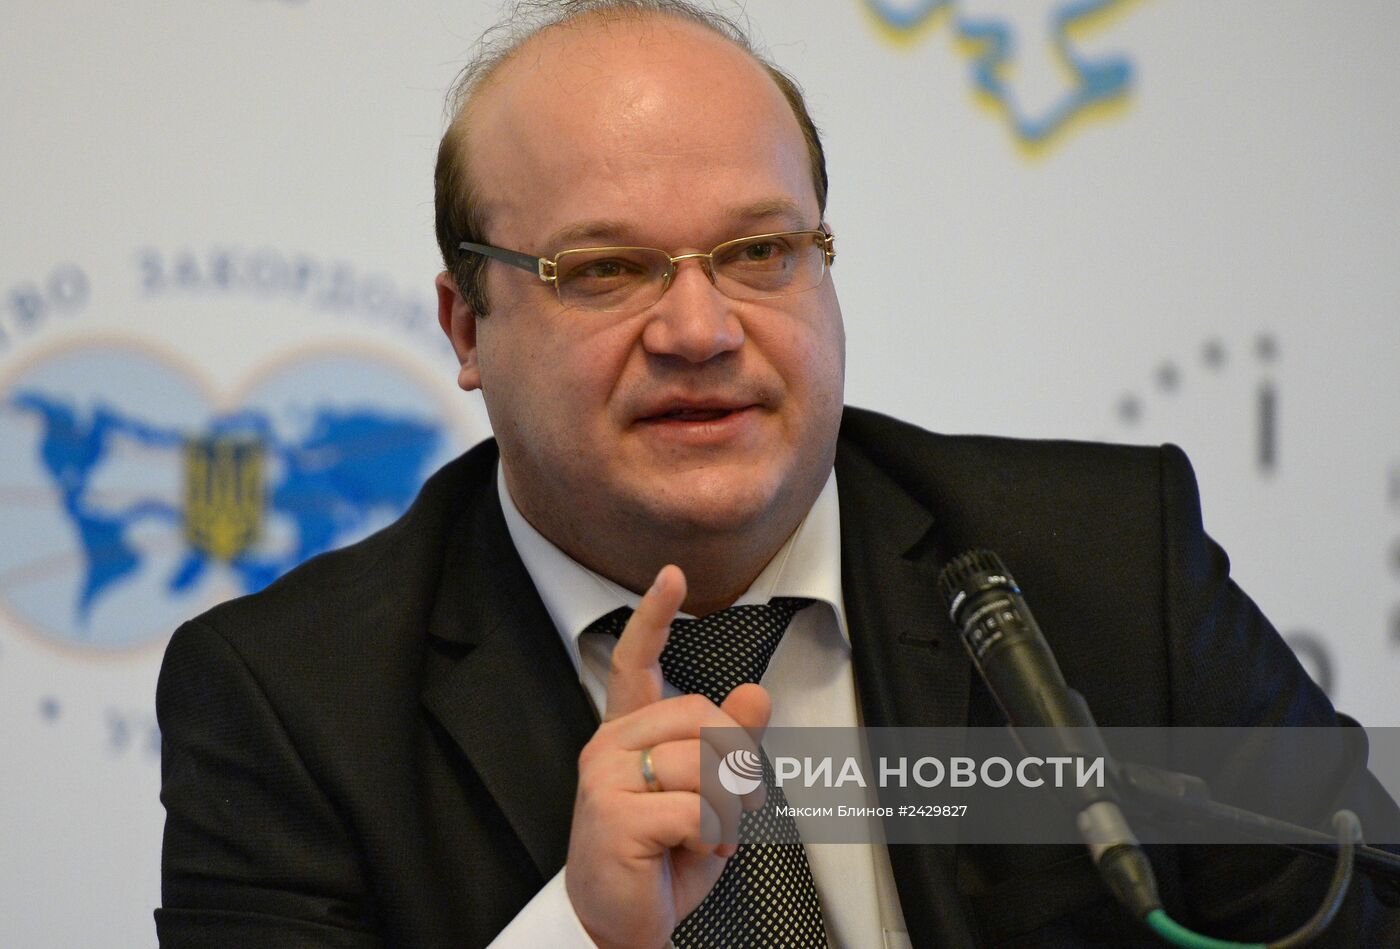 Конференция на тему отношений Украины и ЕС "Новая европейская политика: от слов к действиям"